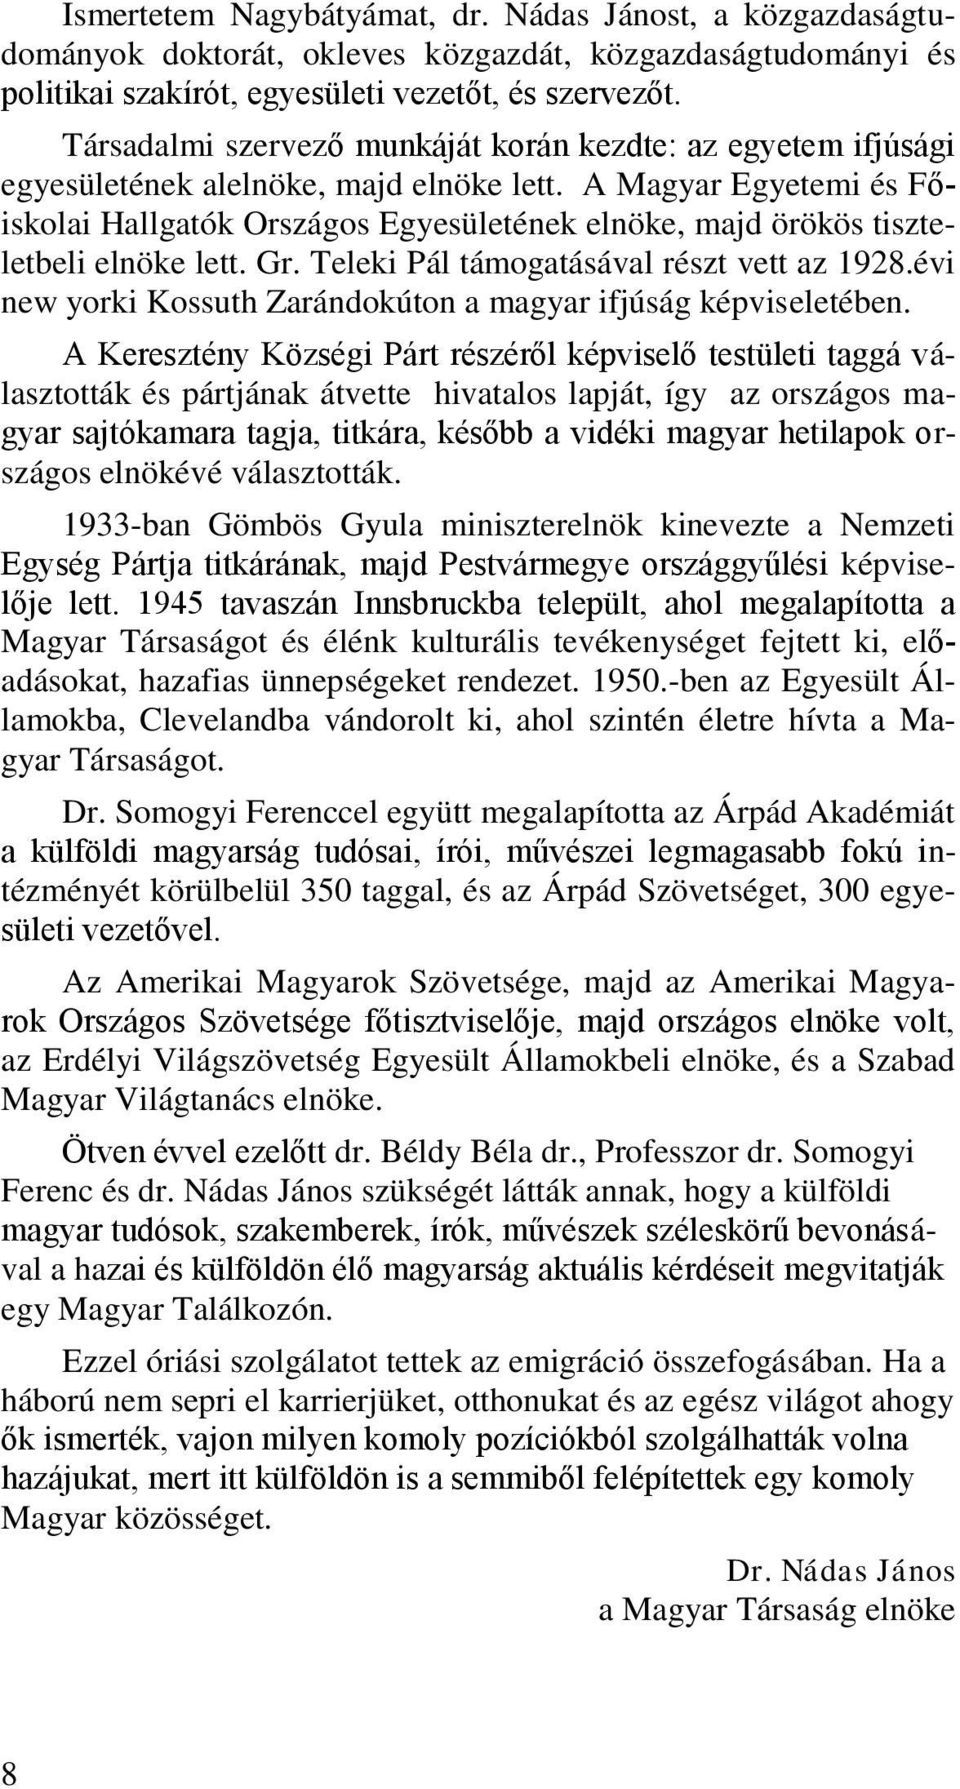 A Magyar Egyetemi és Főiskolai Hallgatók Országos Egyesületének elnöke, majd örökös tiszteletbeli elnöke lett. Gr. Teleki Pál támogatásával részt vett az 1928.